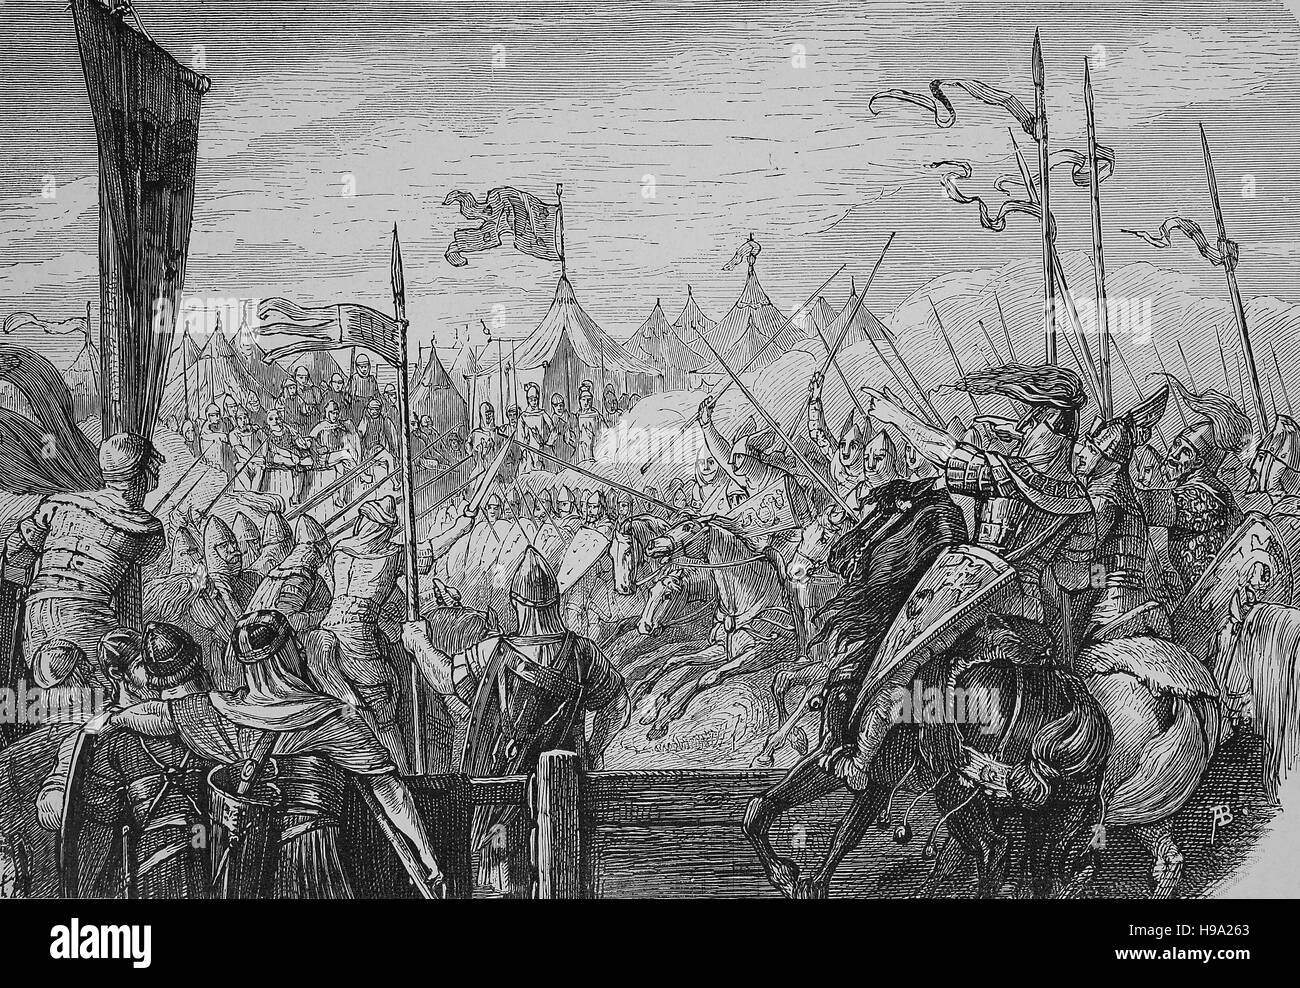 Jeu de combat lors d'un tournoi au début du Moyen Age, illustration historique Banque D'Images